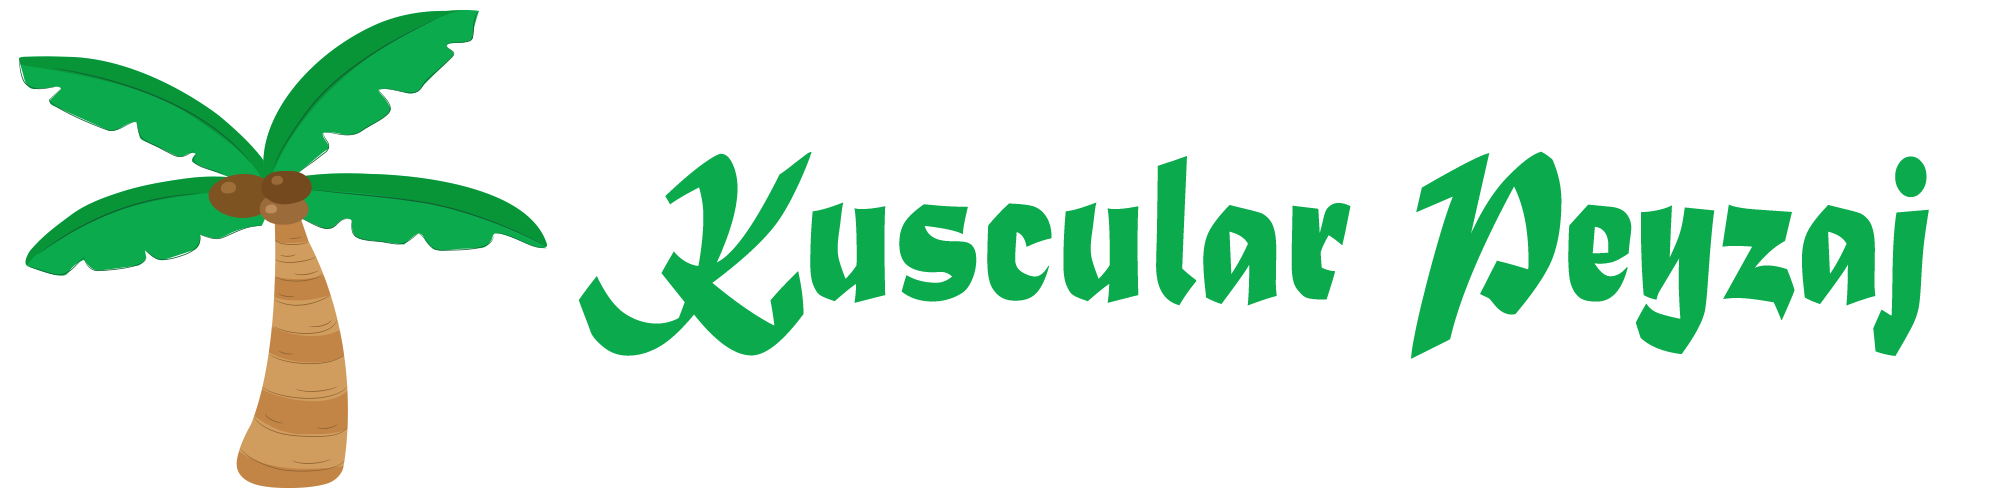 Kuscularpeyzaj.com